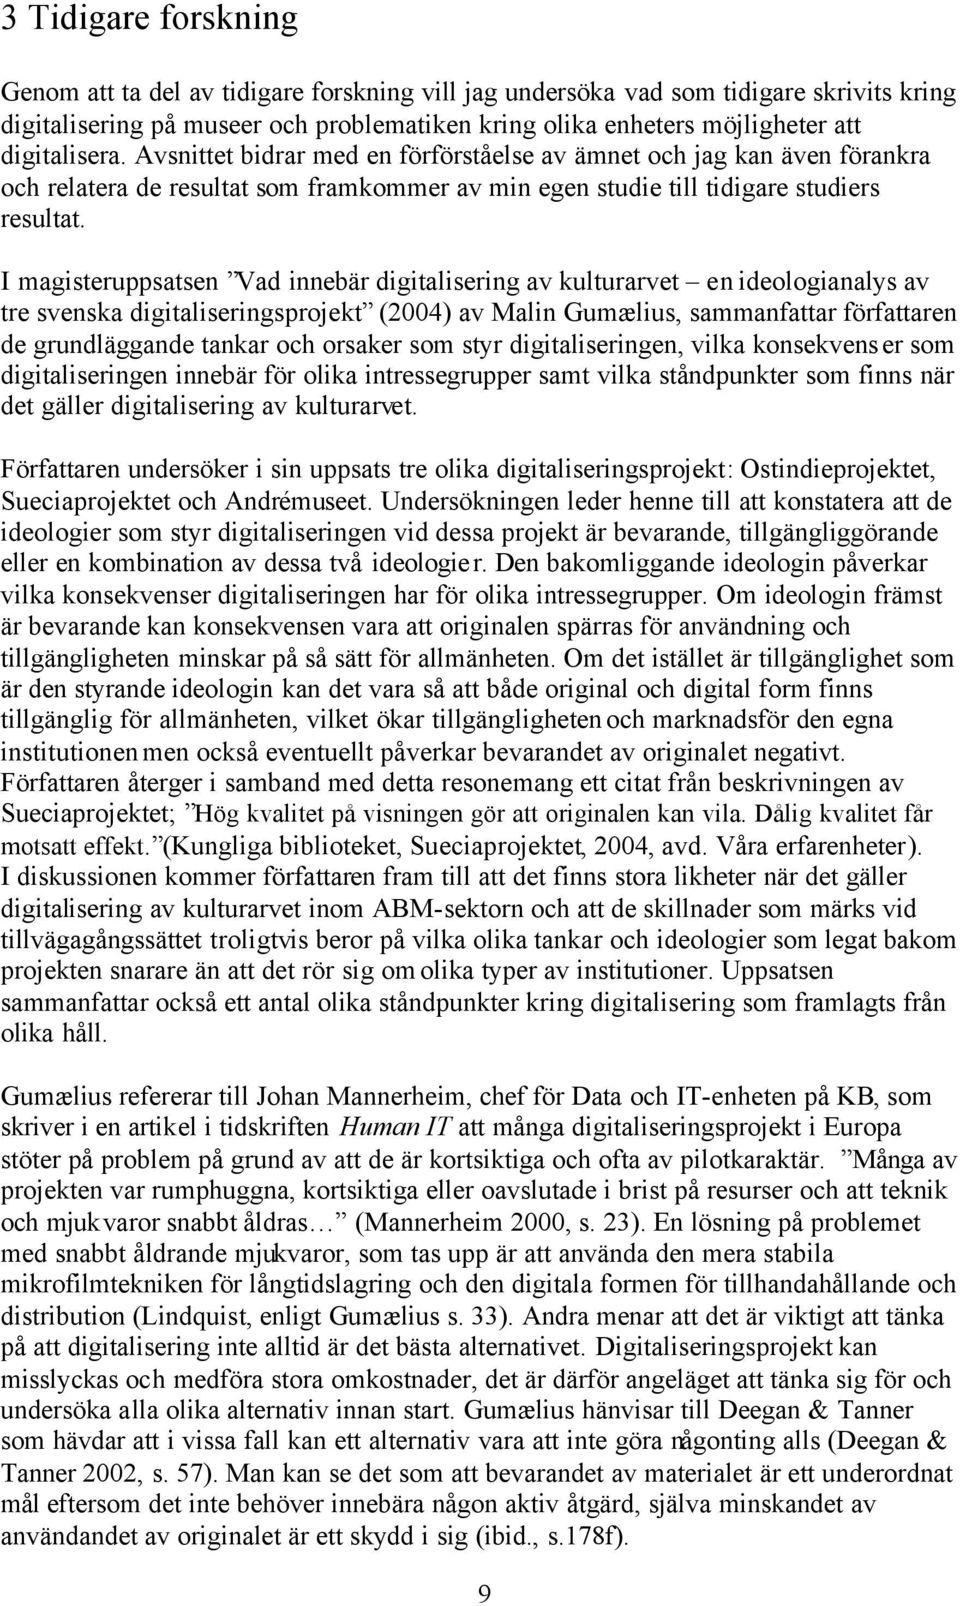 I magisteruppsatsen Vad innebär digitalisering av kulturarvet en ideologianalys av tre svenska digitaliseringsprojekt (2004) av Malin Gumælius, sammanfattar författaren de grundläggande tankar och